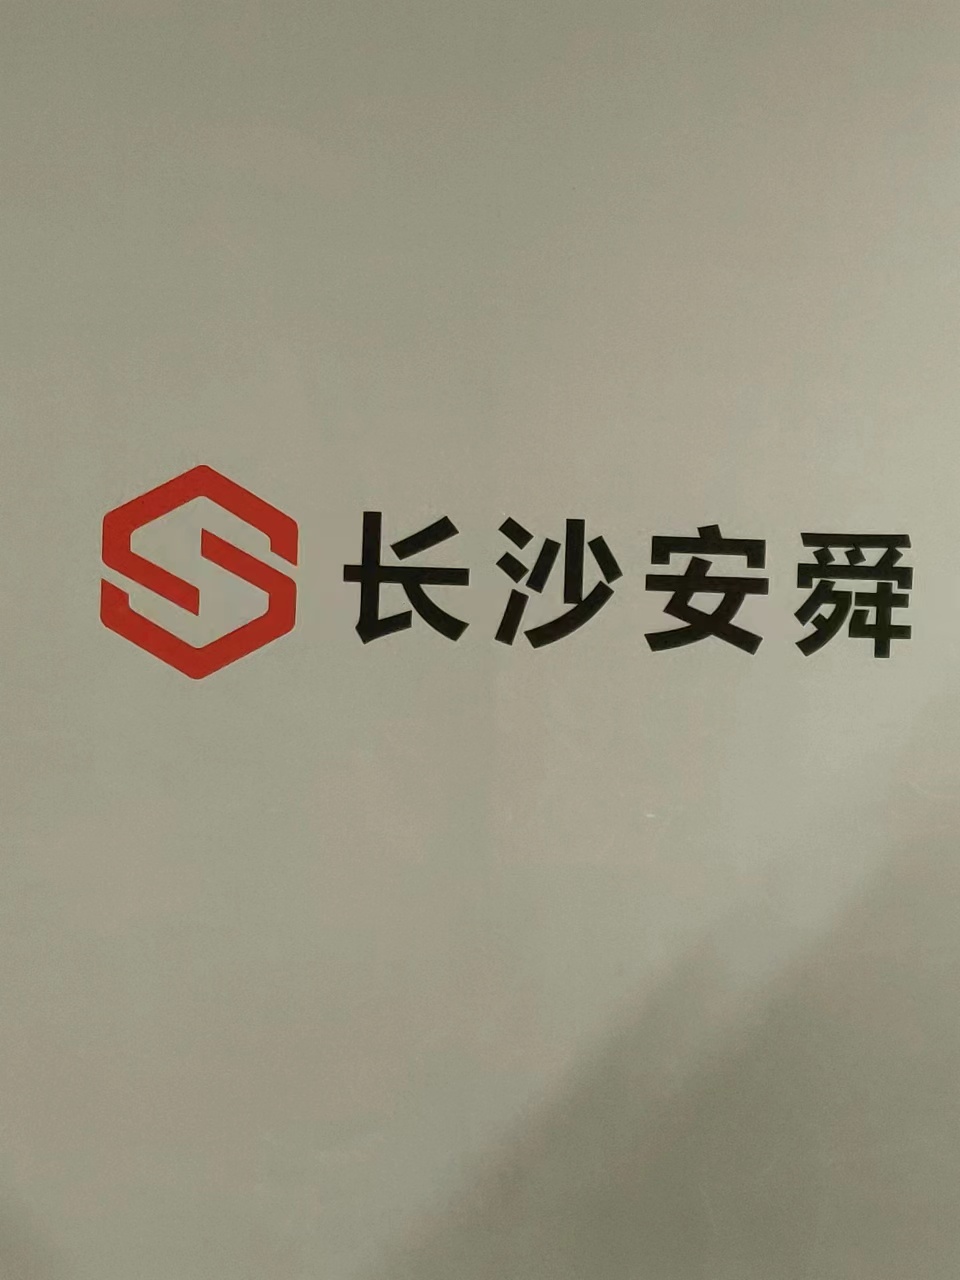 长沙安舜企业管理咨询有限公司 logo